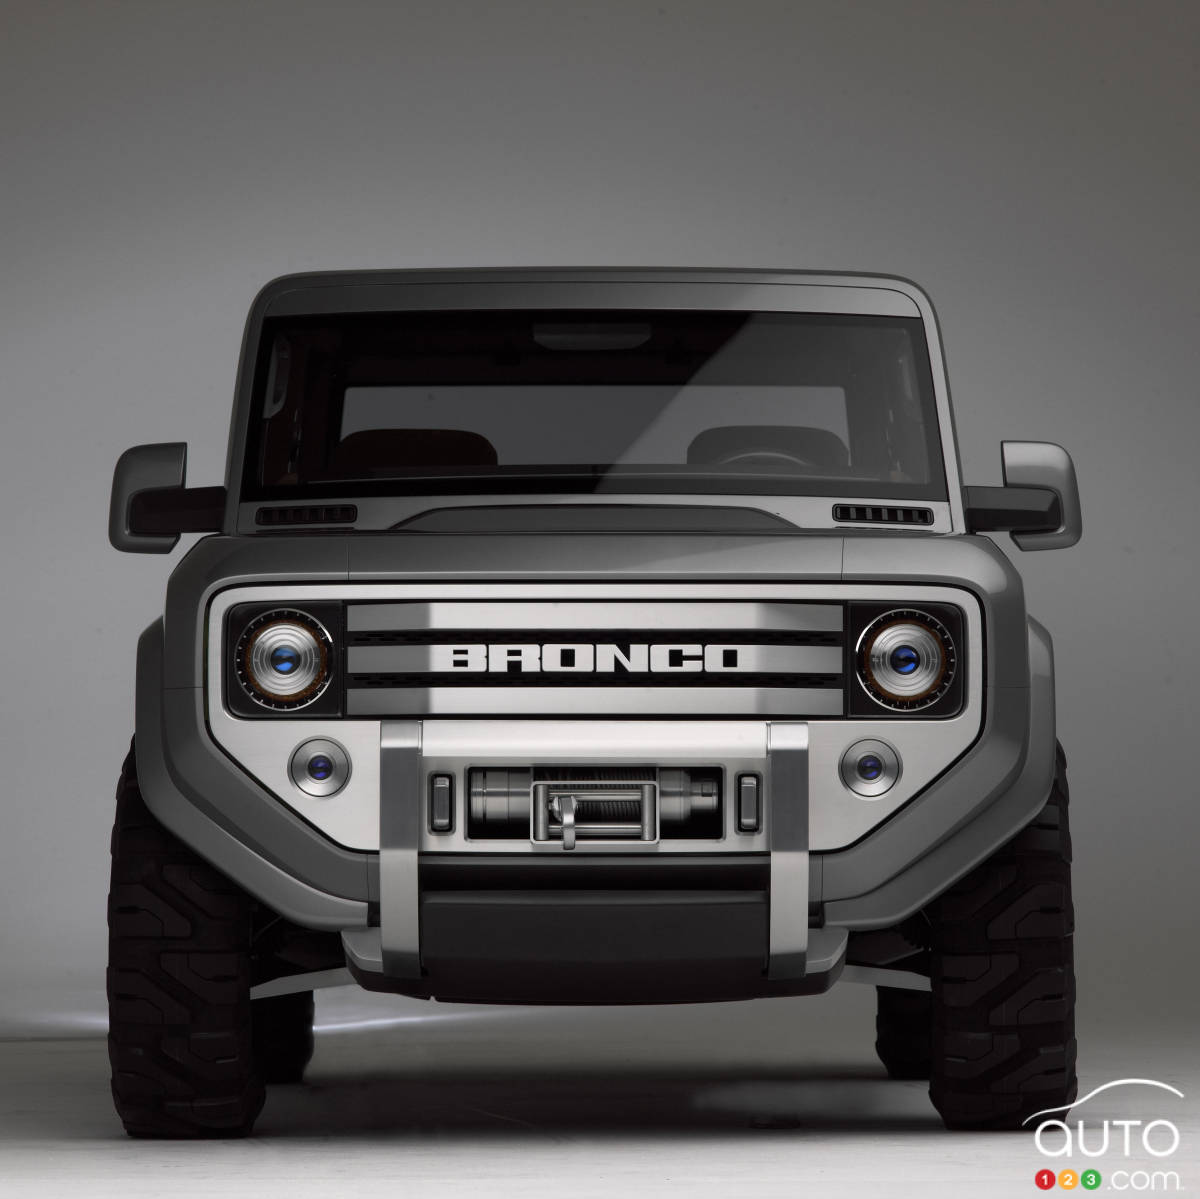 Une transmission manuelle pour le Ford Bronco 2020